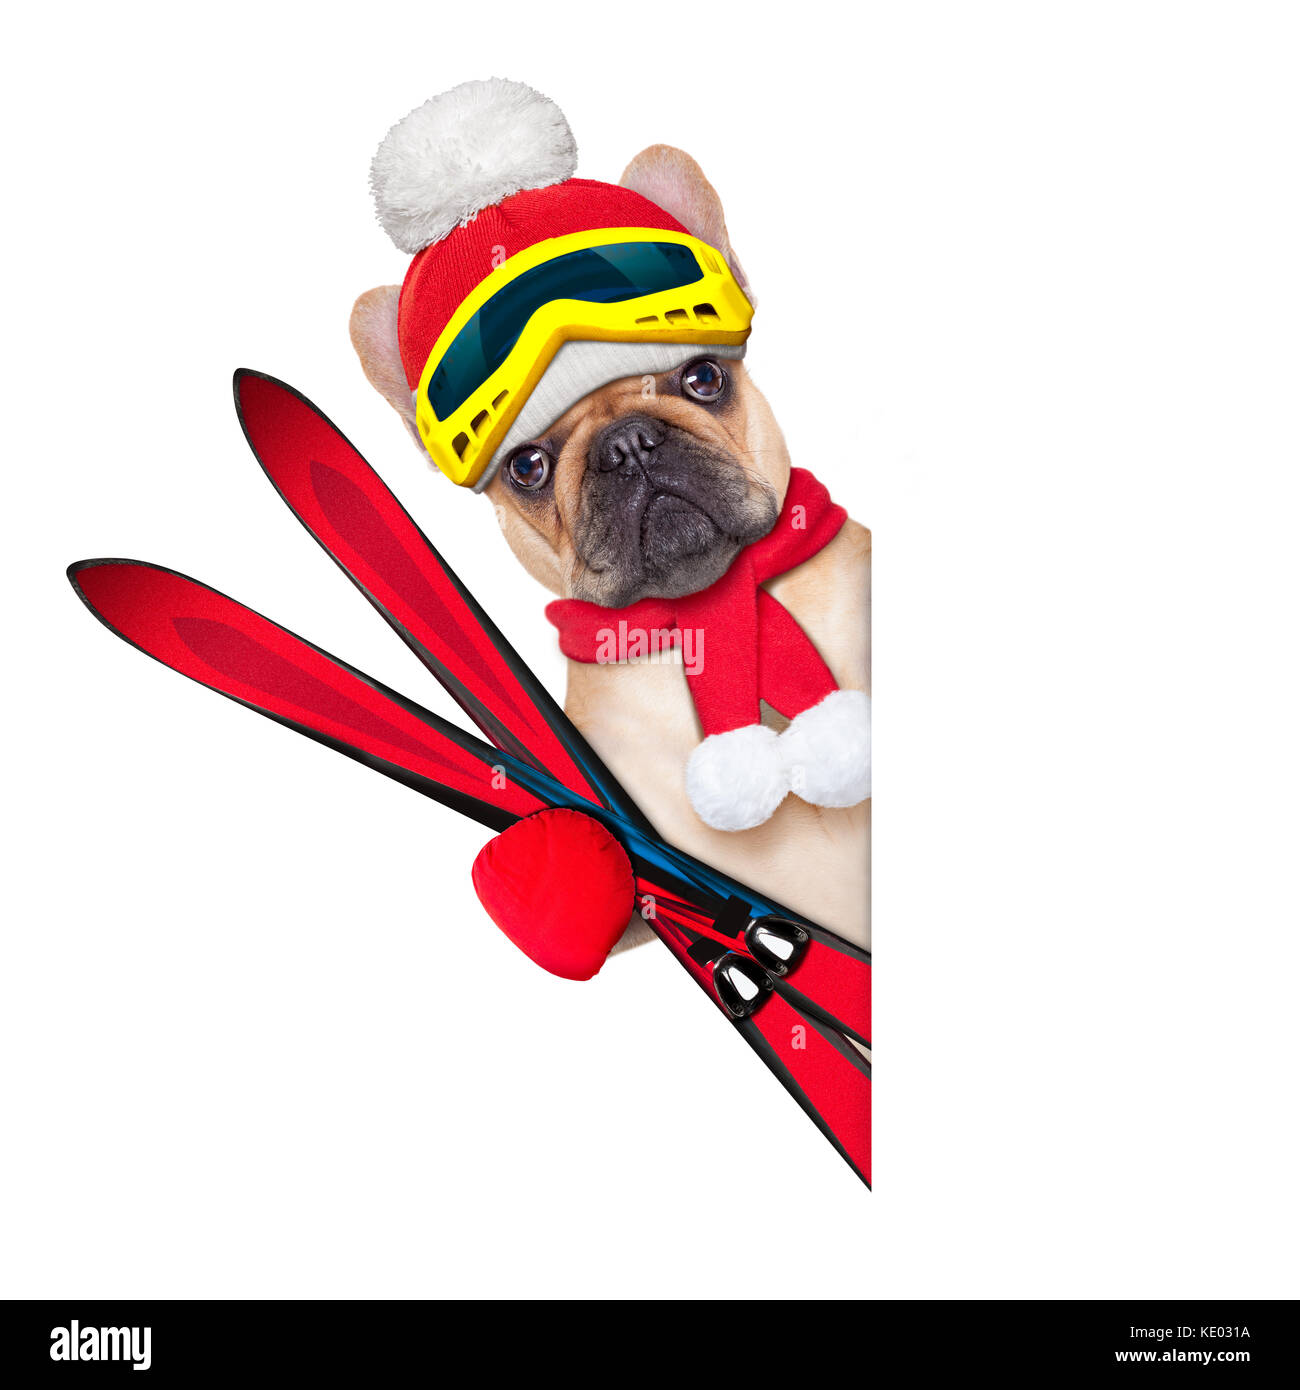 Chien bouledogue français fauve avec équipement de ski, portant ces lunettes , gants , un chapeau et une écharpe rouge,blanc à côté d'une une ouverture vierge ou une affiche, isolé sur blanc Banque D'Images